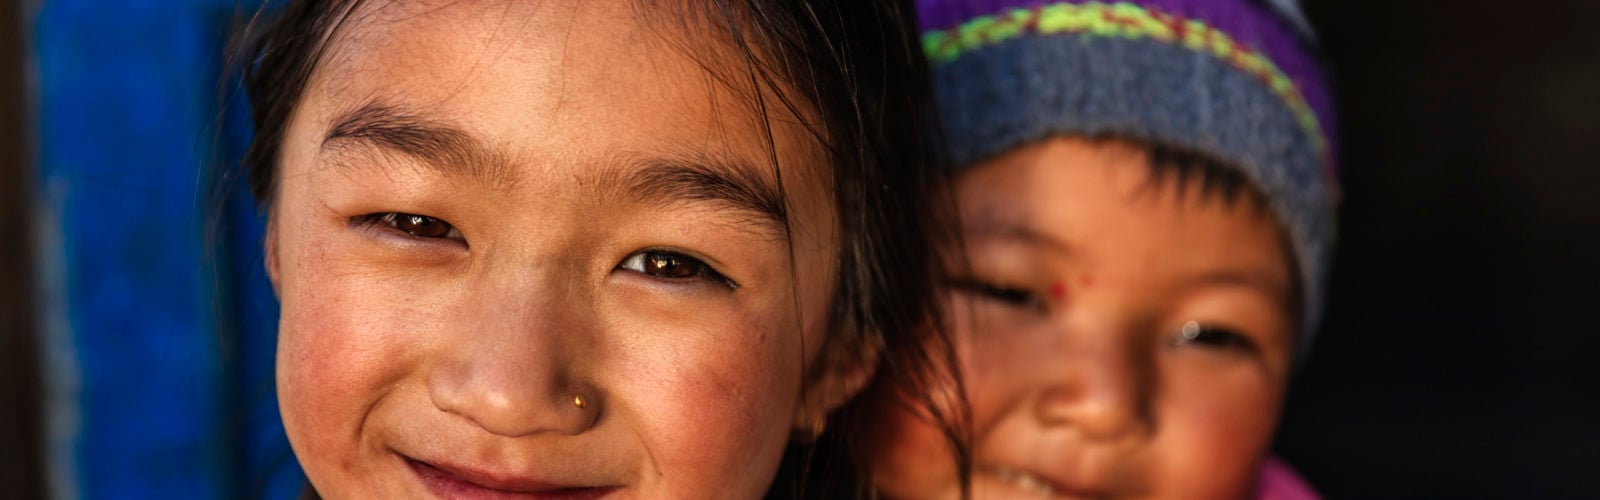 nepalese-children